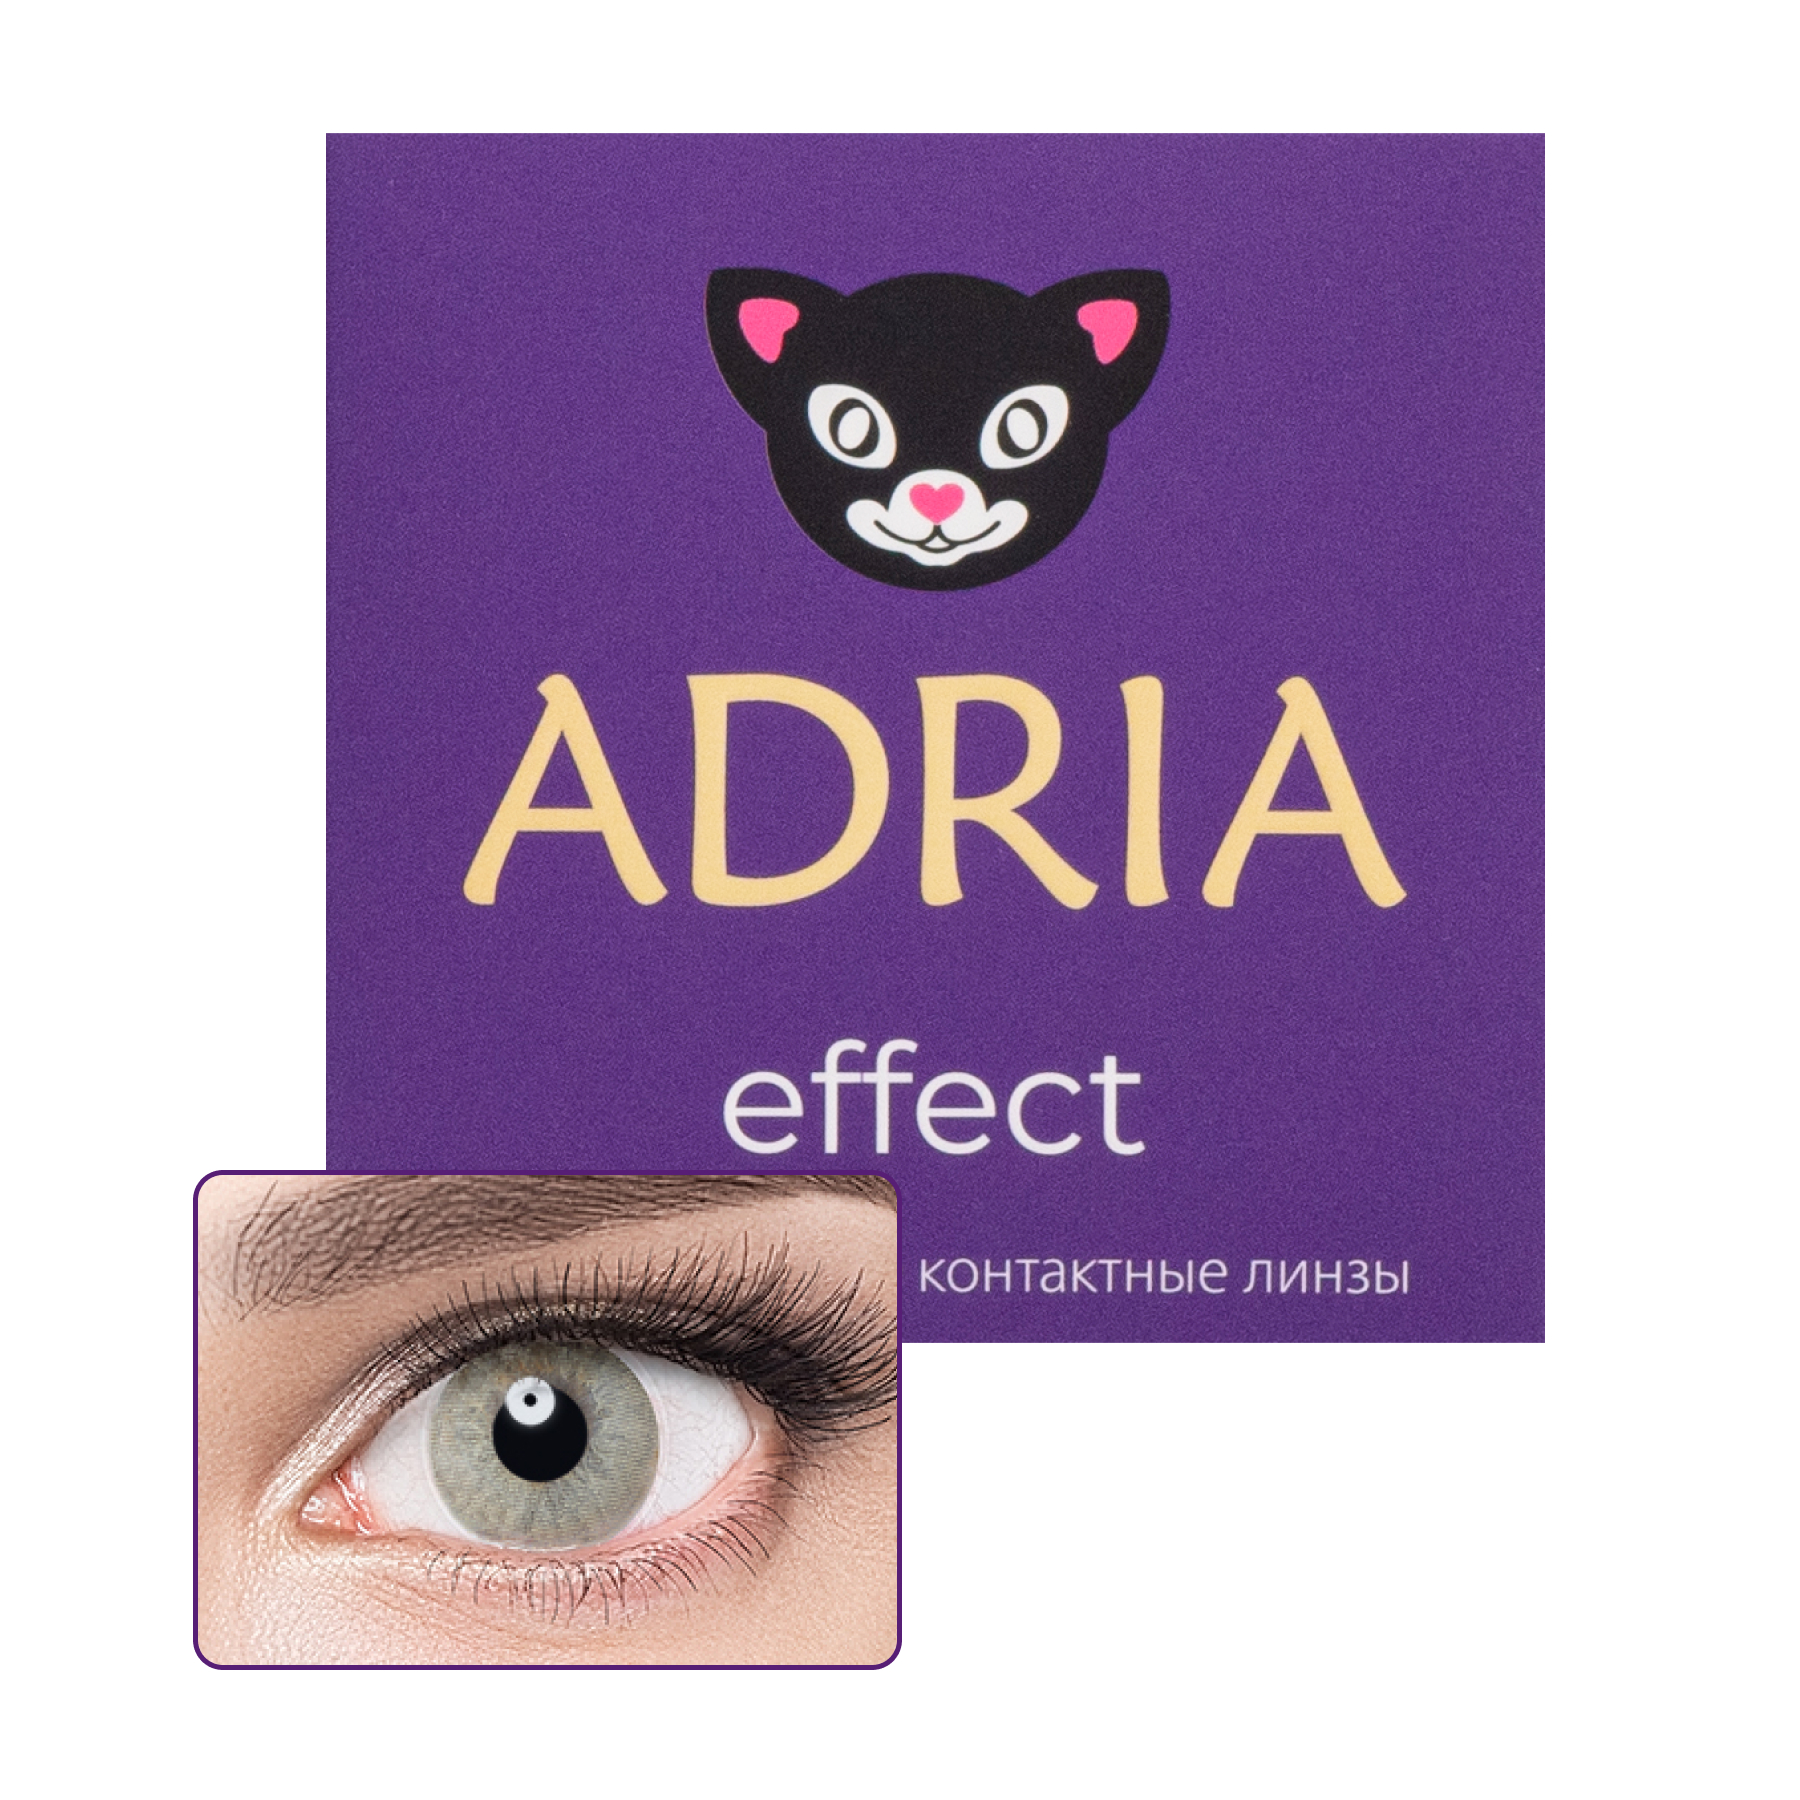 Купить Effect color 2 линзы, Цветные контактные линзы Adria Effect color 2 pack PWR -0, 50, R 8.6, Ivory, ореховые